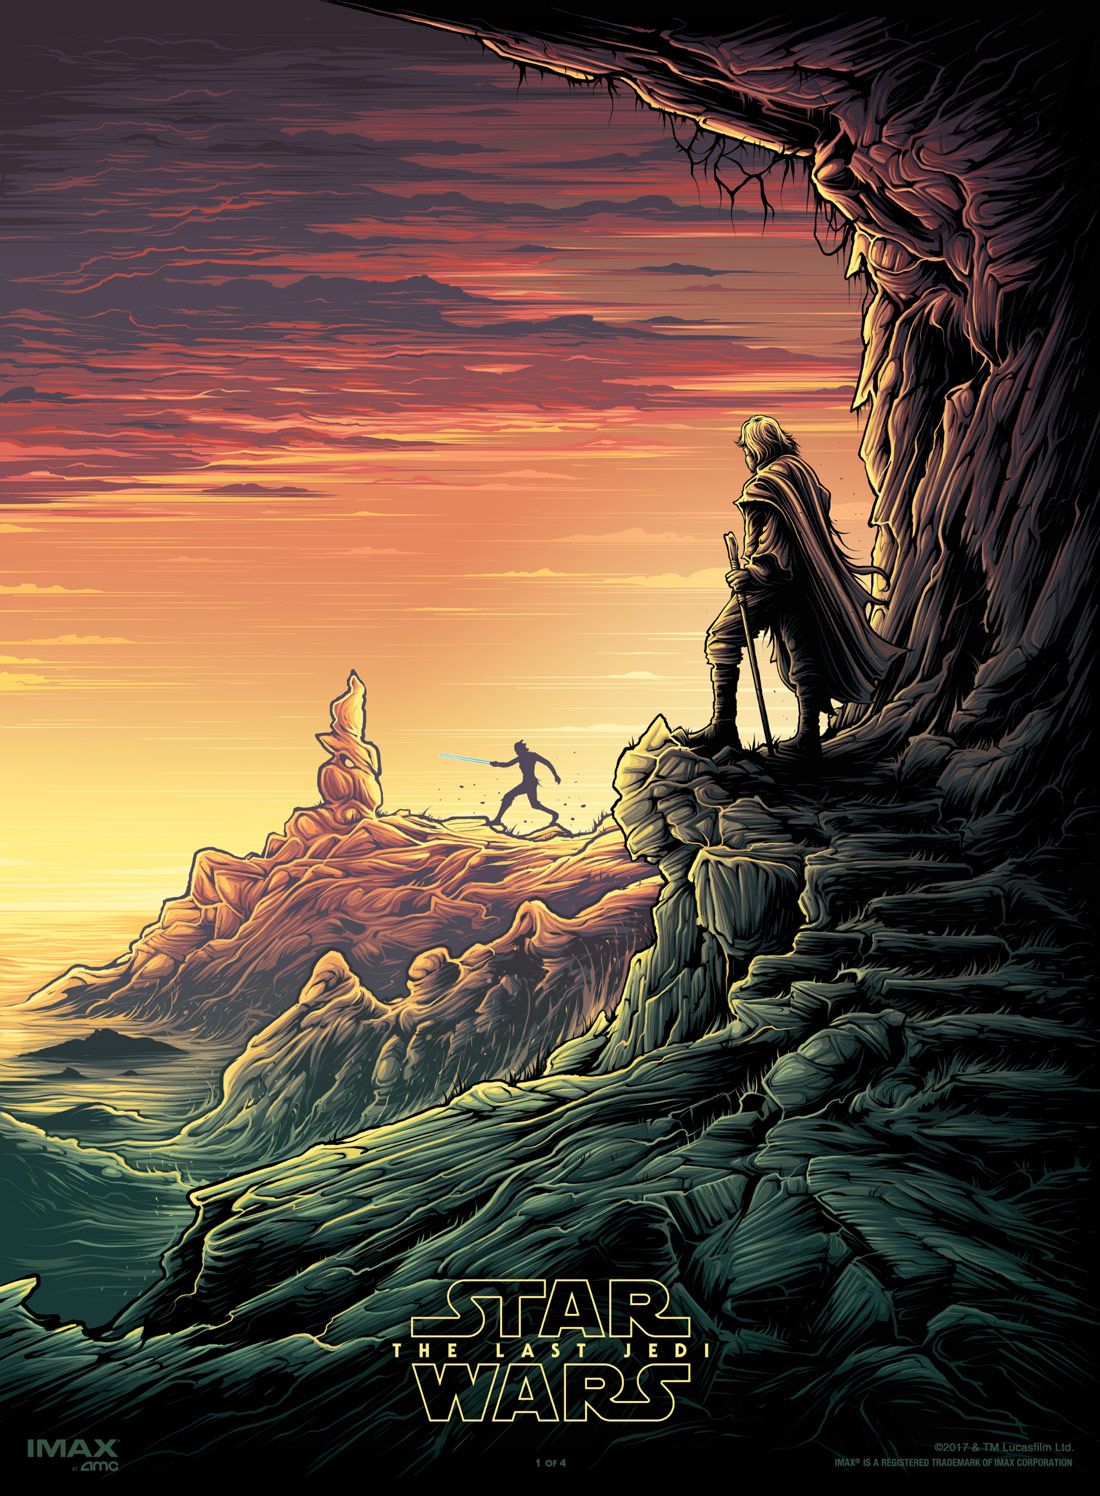 Star Wars: The Last Jedi IMAX Poster